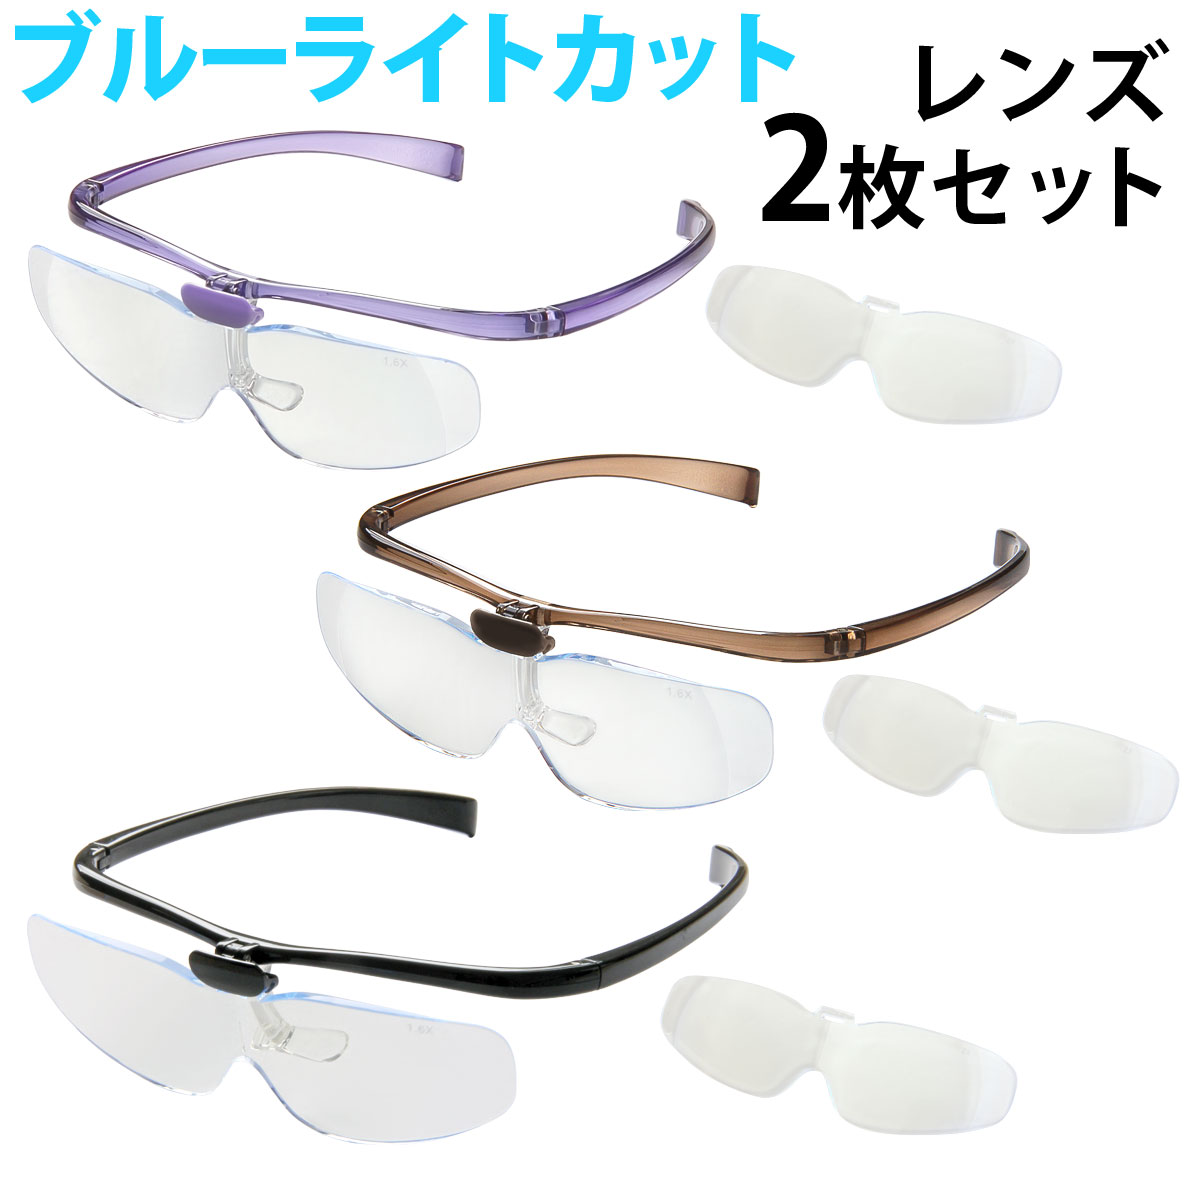 双眼メガネルーペ メガネタイプ 1.6倍 2倍 レンズ2枚セット HF-70DE メガネ型ルーペ 跳ね上げ メガネの上から クリアルーペ 手芸 拡大鏡 読書 模型 まつげエクステ 池田レンズ